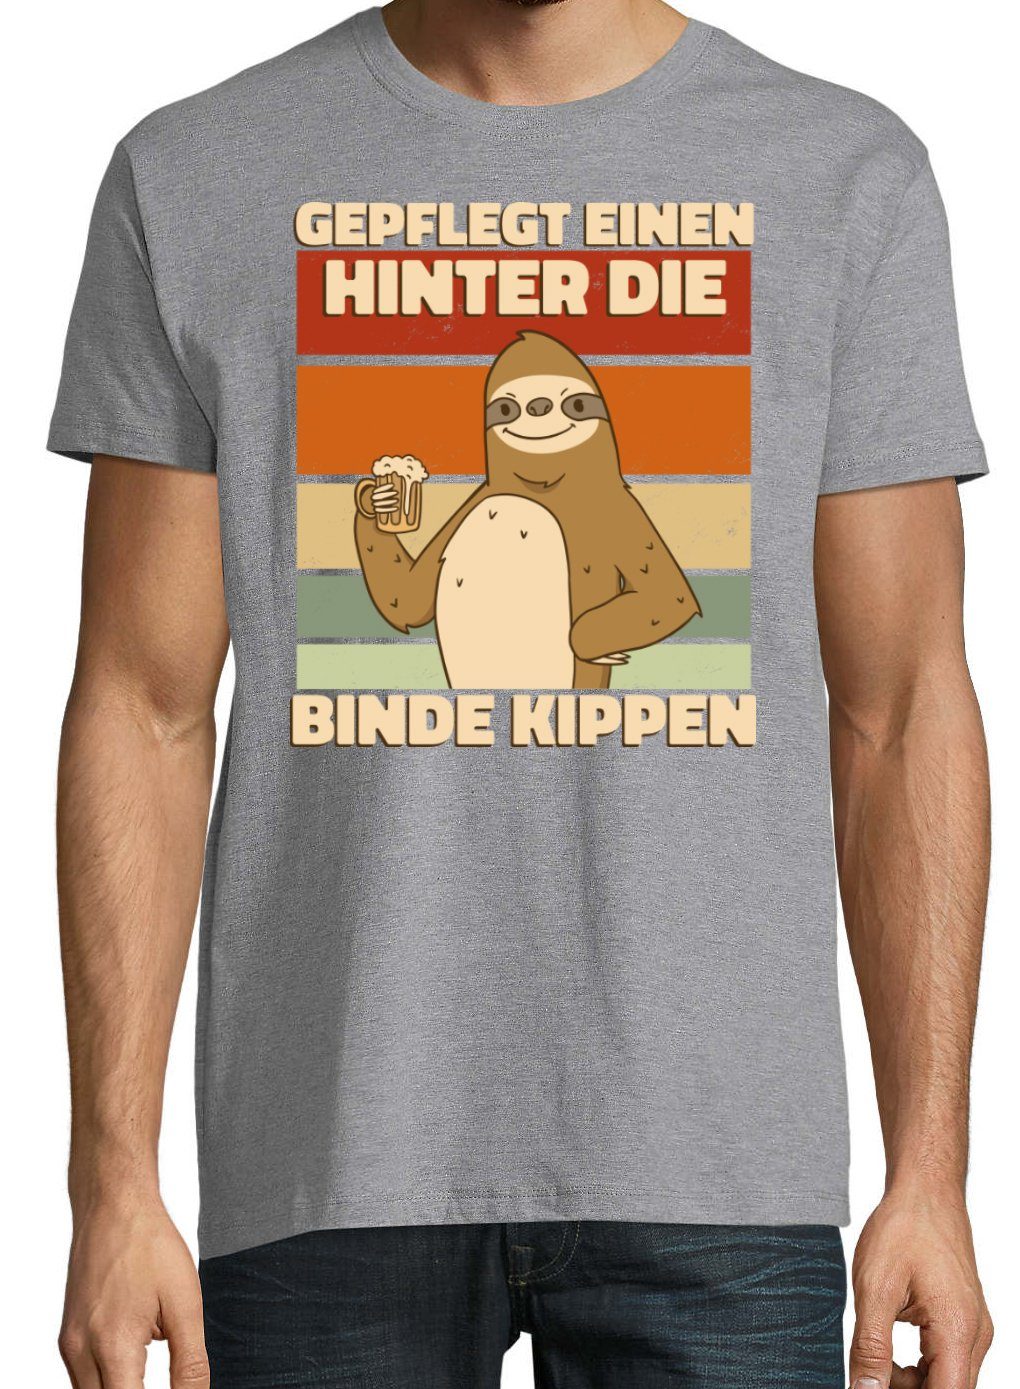 Youth Designz Spruch lustigem EINEN Fun-Look GEPFLEGT KIPPEN Print-Shirt und HINTER Herren Grau T-Shirt mit Print BINDE DIE